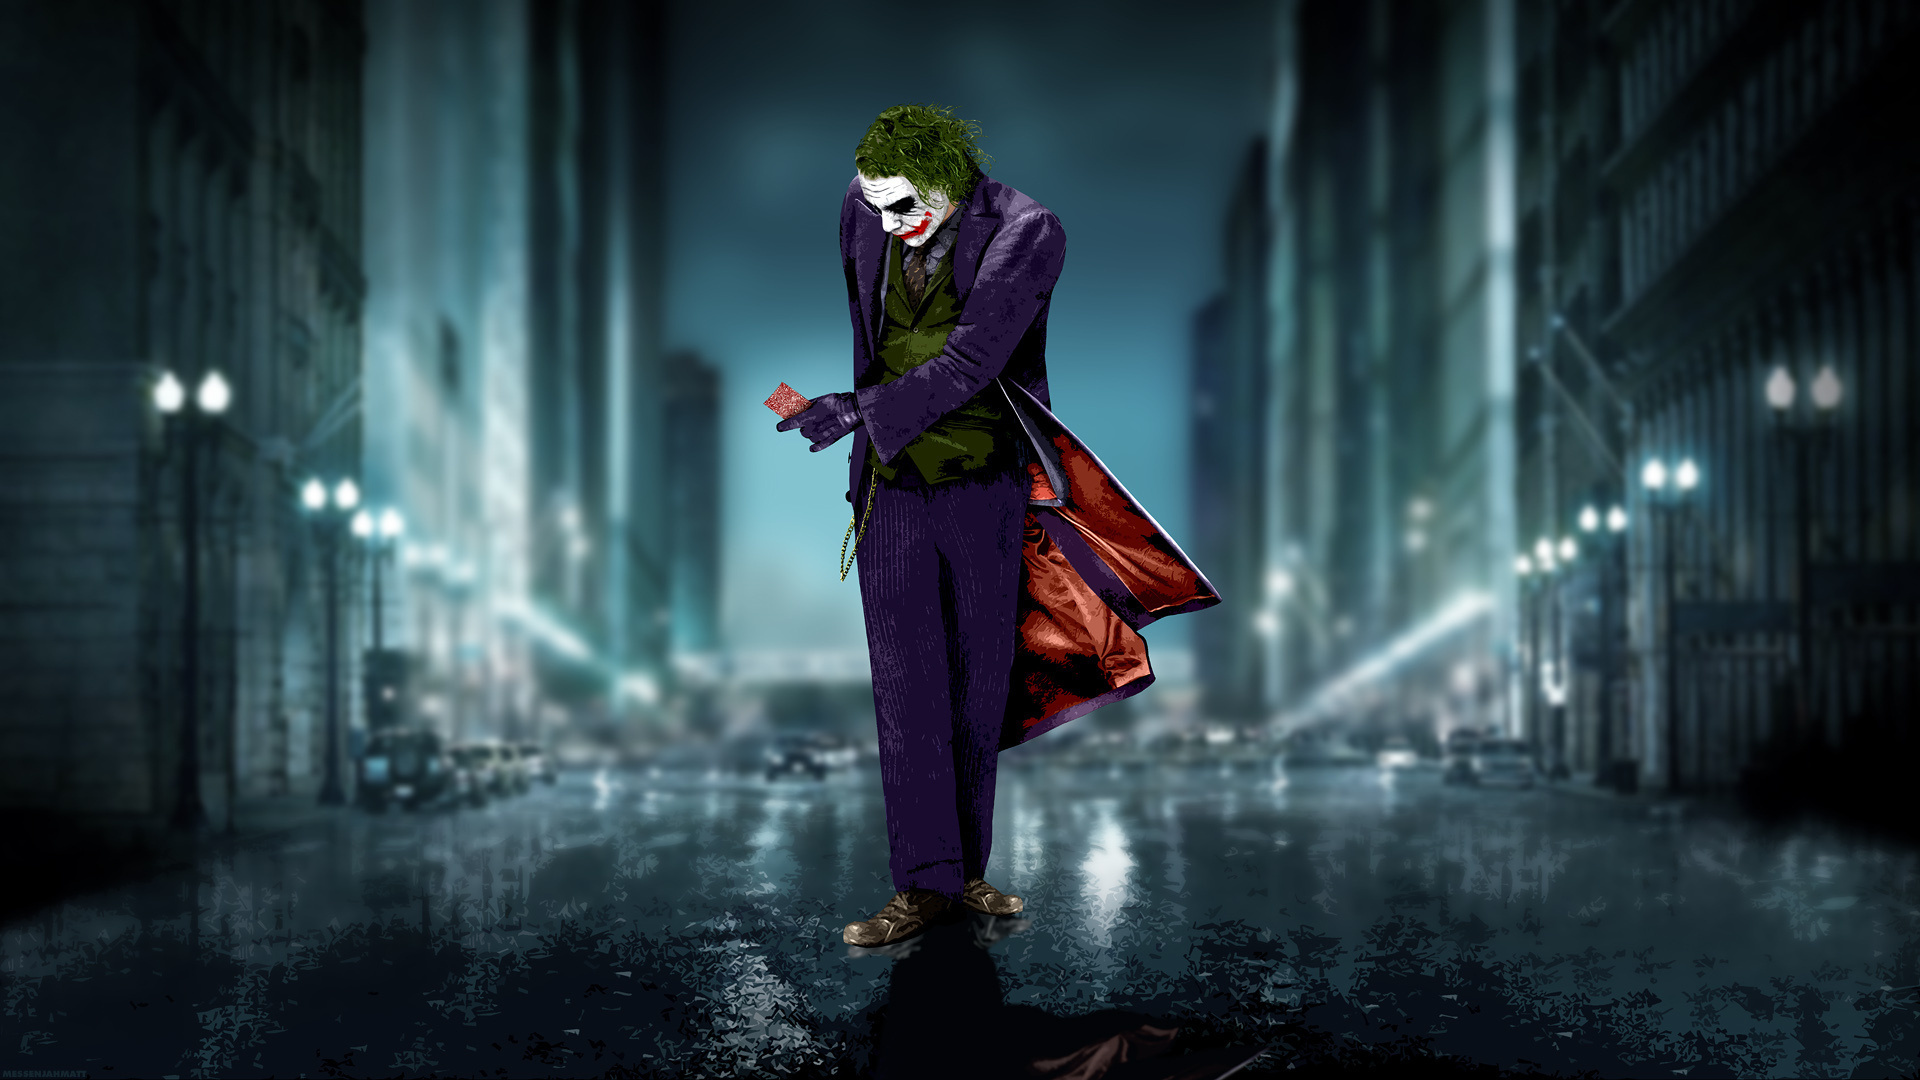 Joker In Batman Movie Poster HD Wallpaper Search More